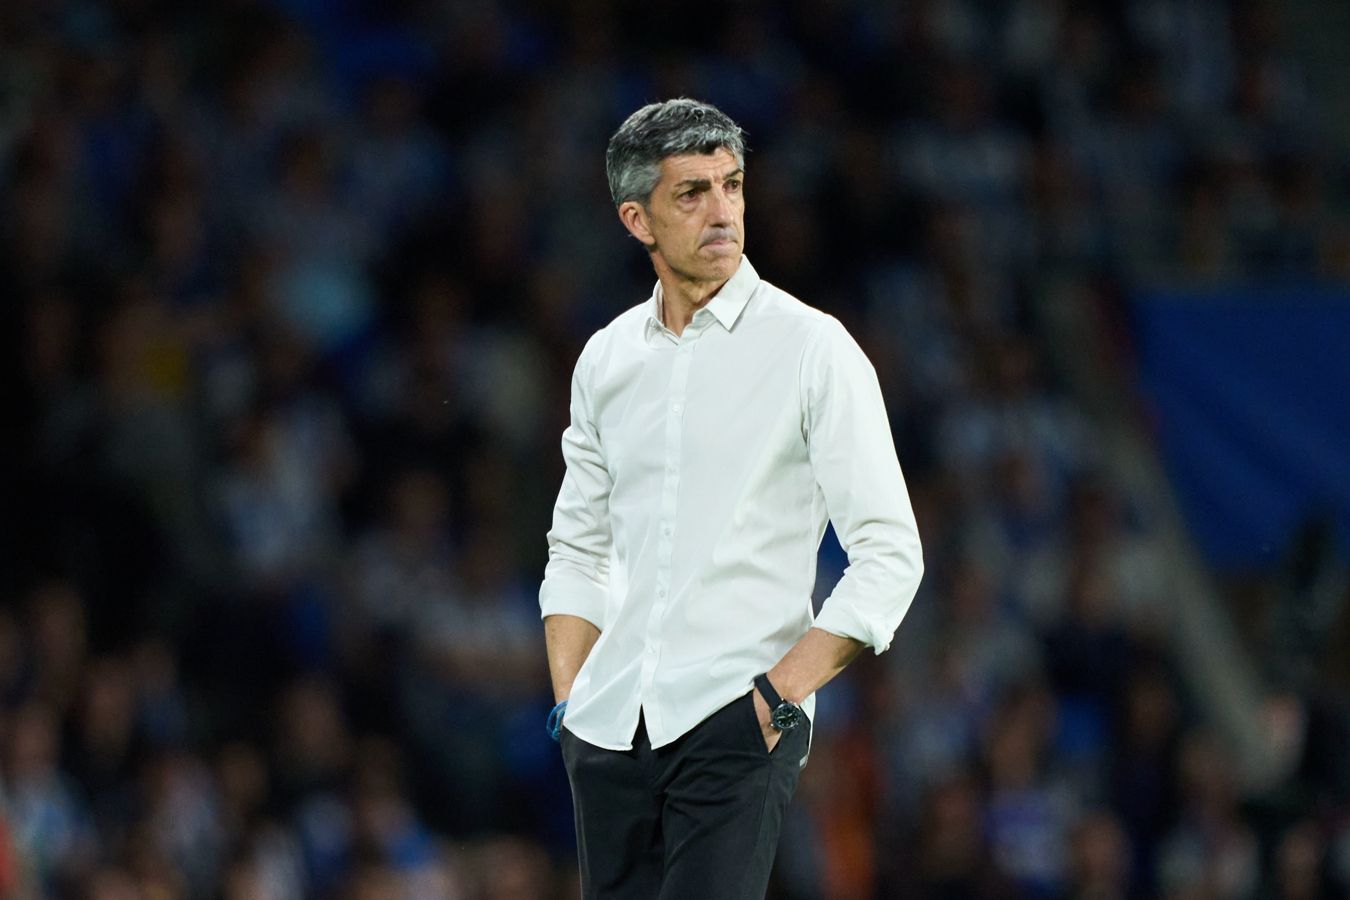 Тренер «Реала Сосьедад» Альгуасиль высказался о ничейном результате в матче с «Мальоркой»